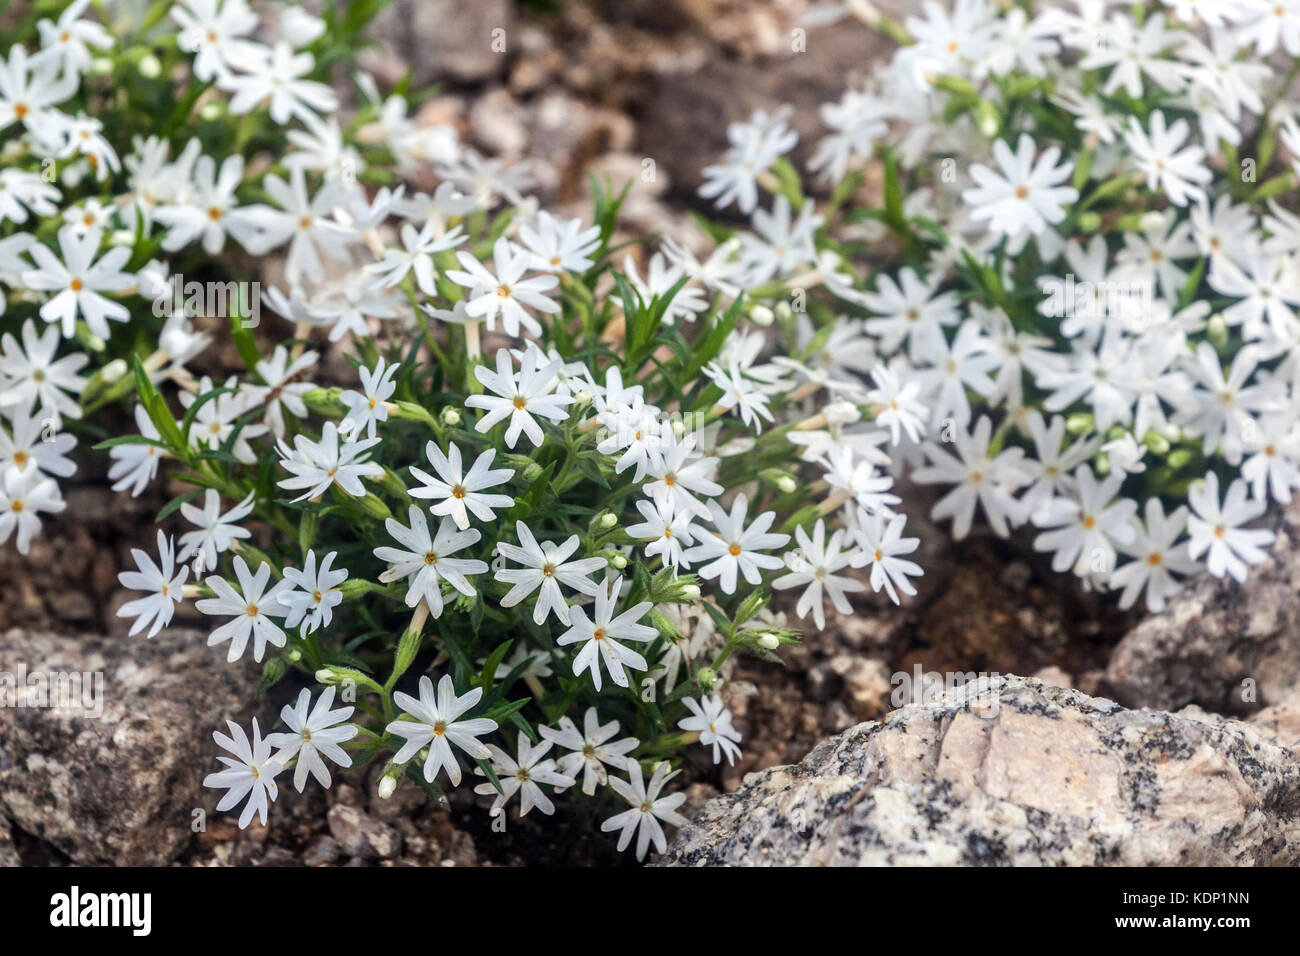 Phlox 'Snow fiocchi" al rock garden fiori bianchi Foto Stock